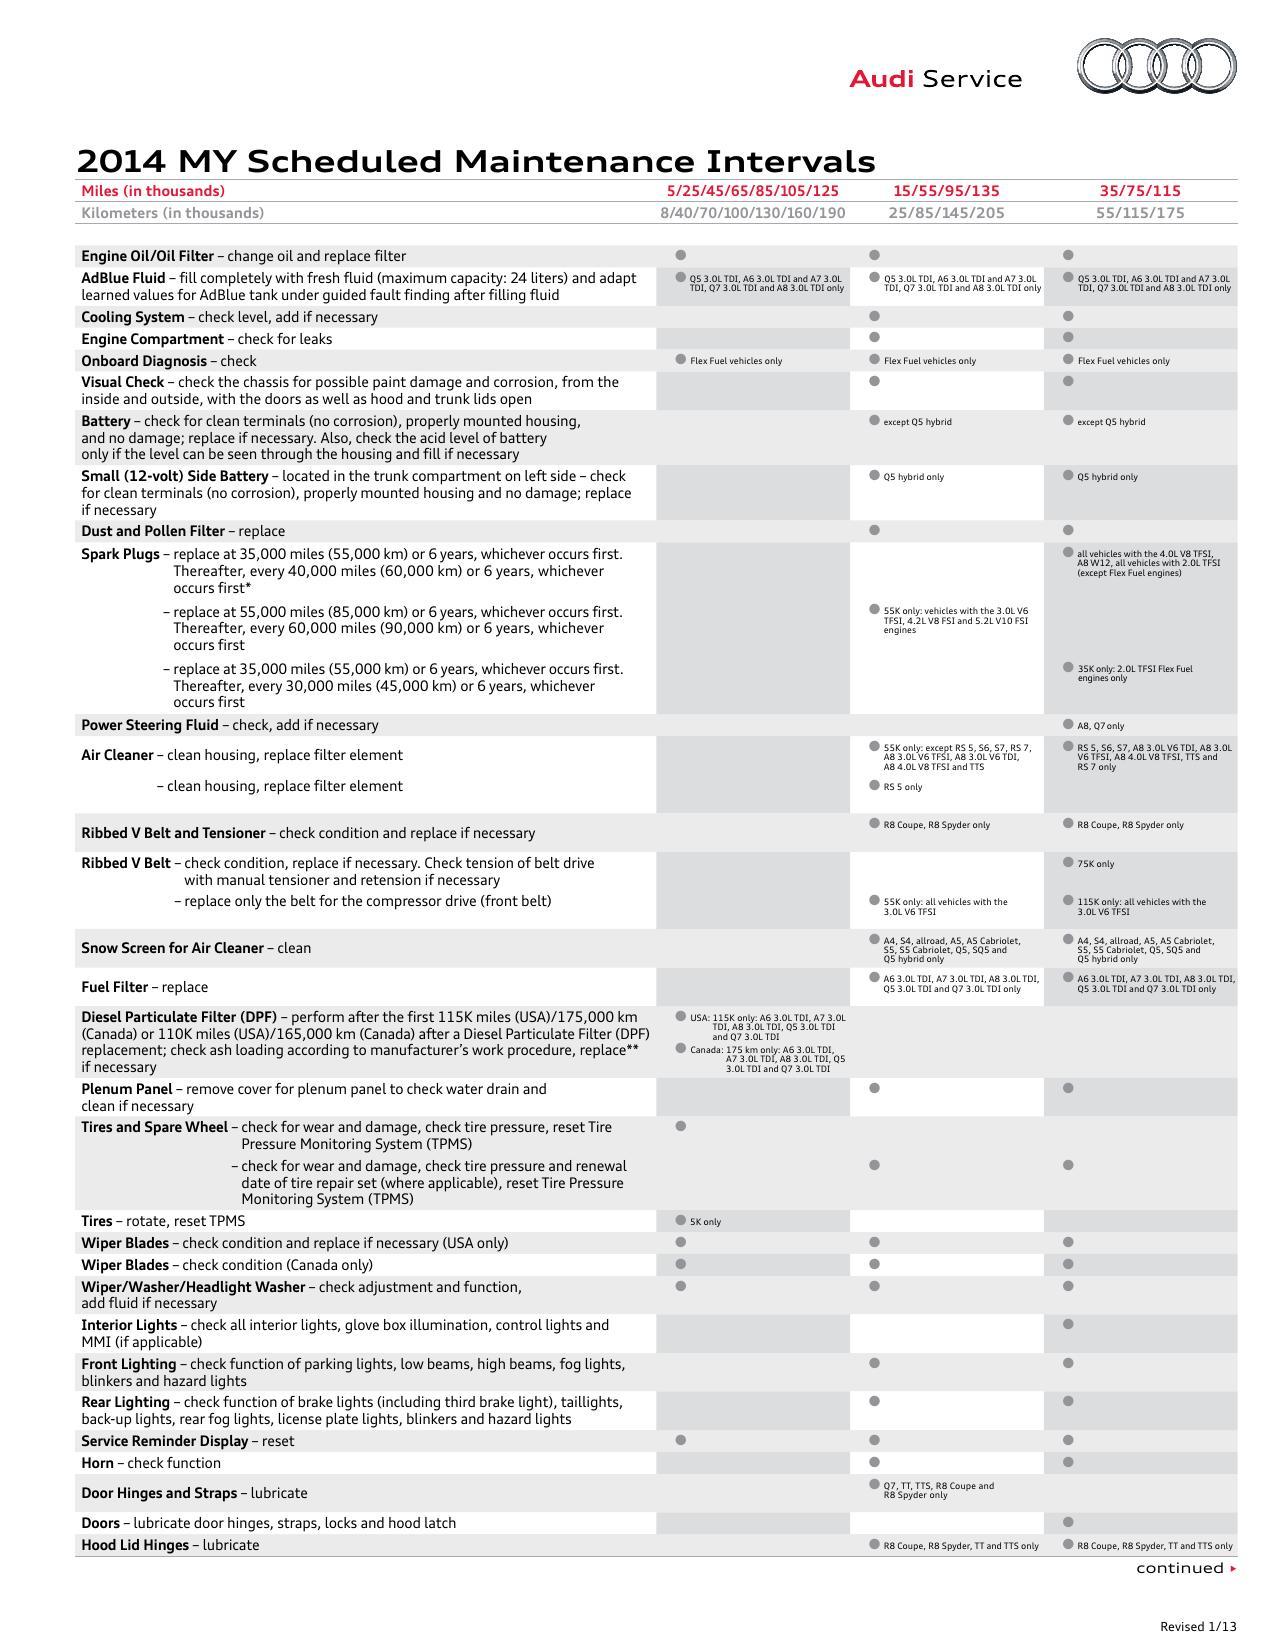 2014-audi-scheduled-maintenance-intervals.pdf